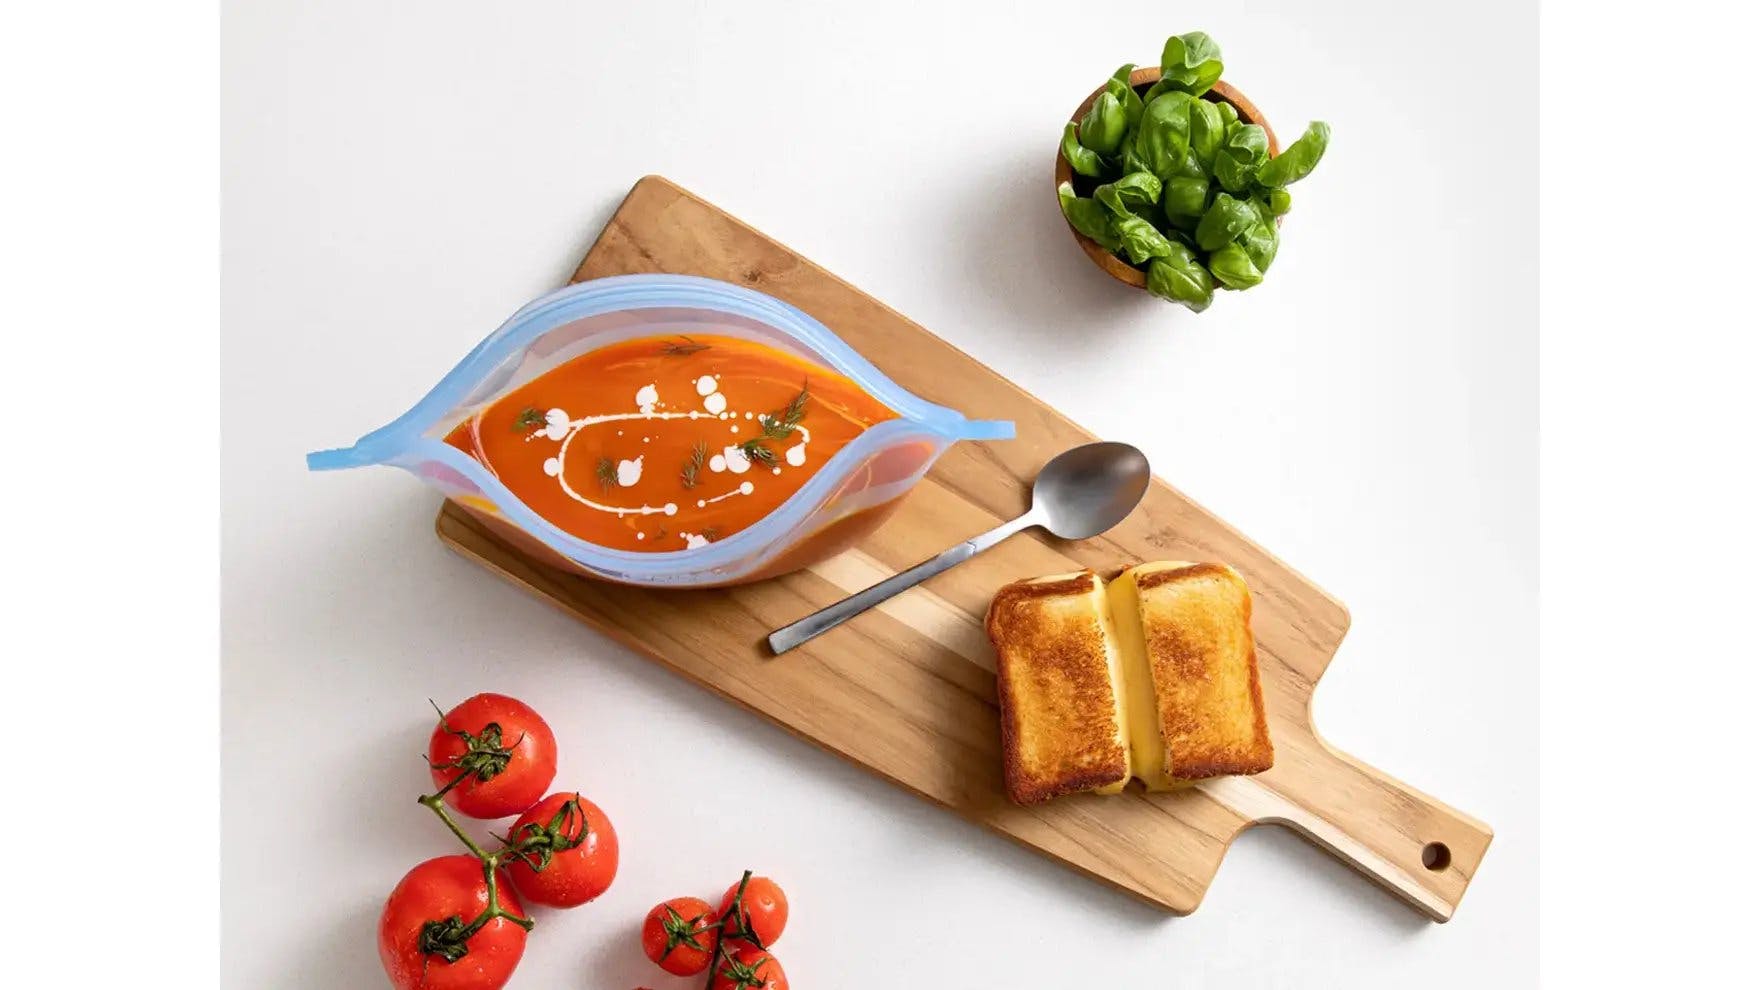 Sopa de tomate en recipiente Ziploc Endurables con un emparedado de queso derretido sobre tabla de cortar